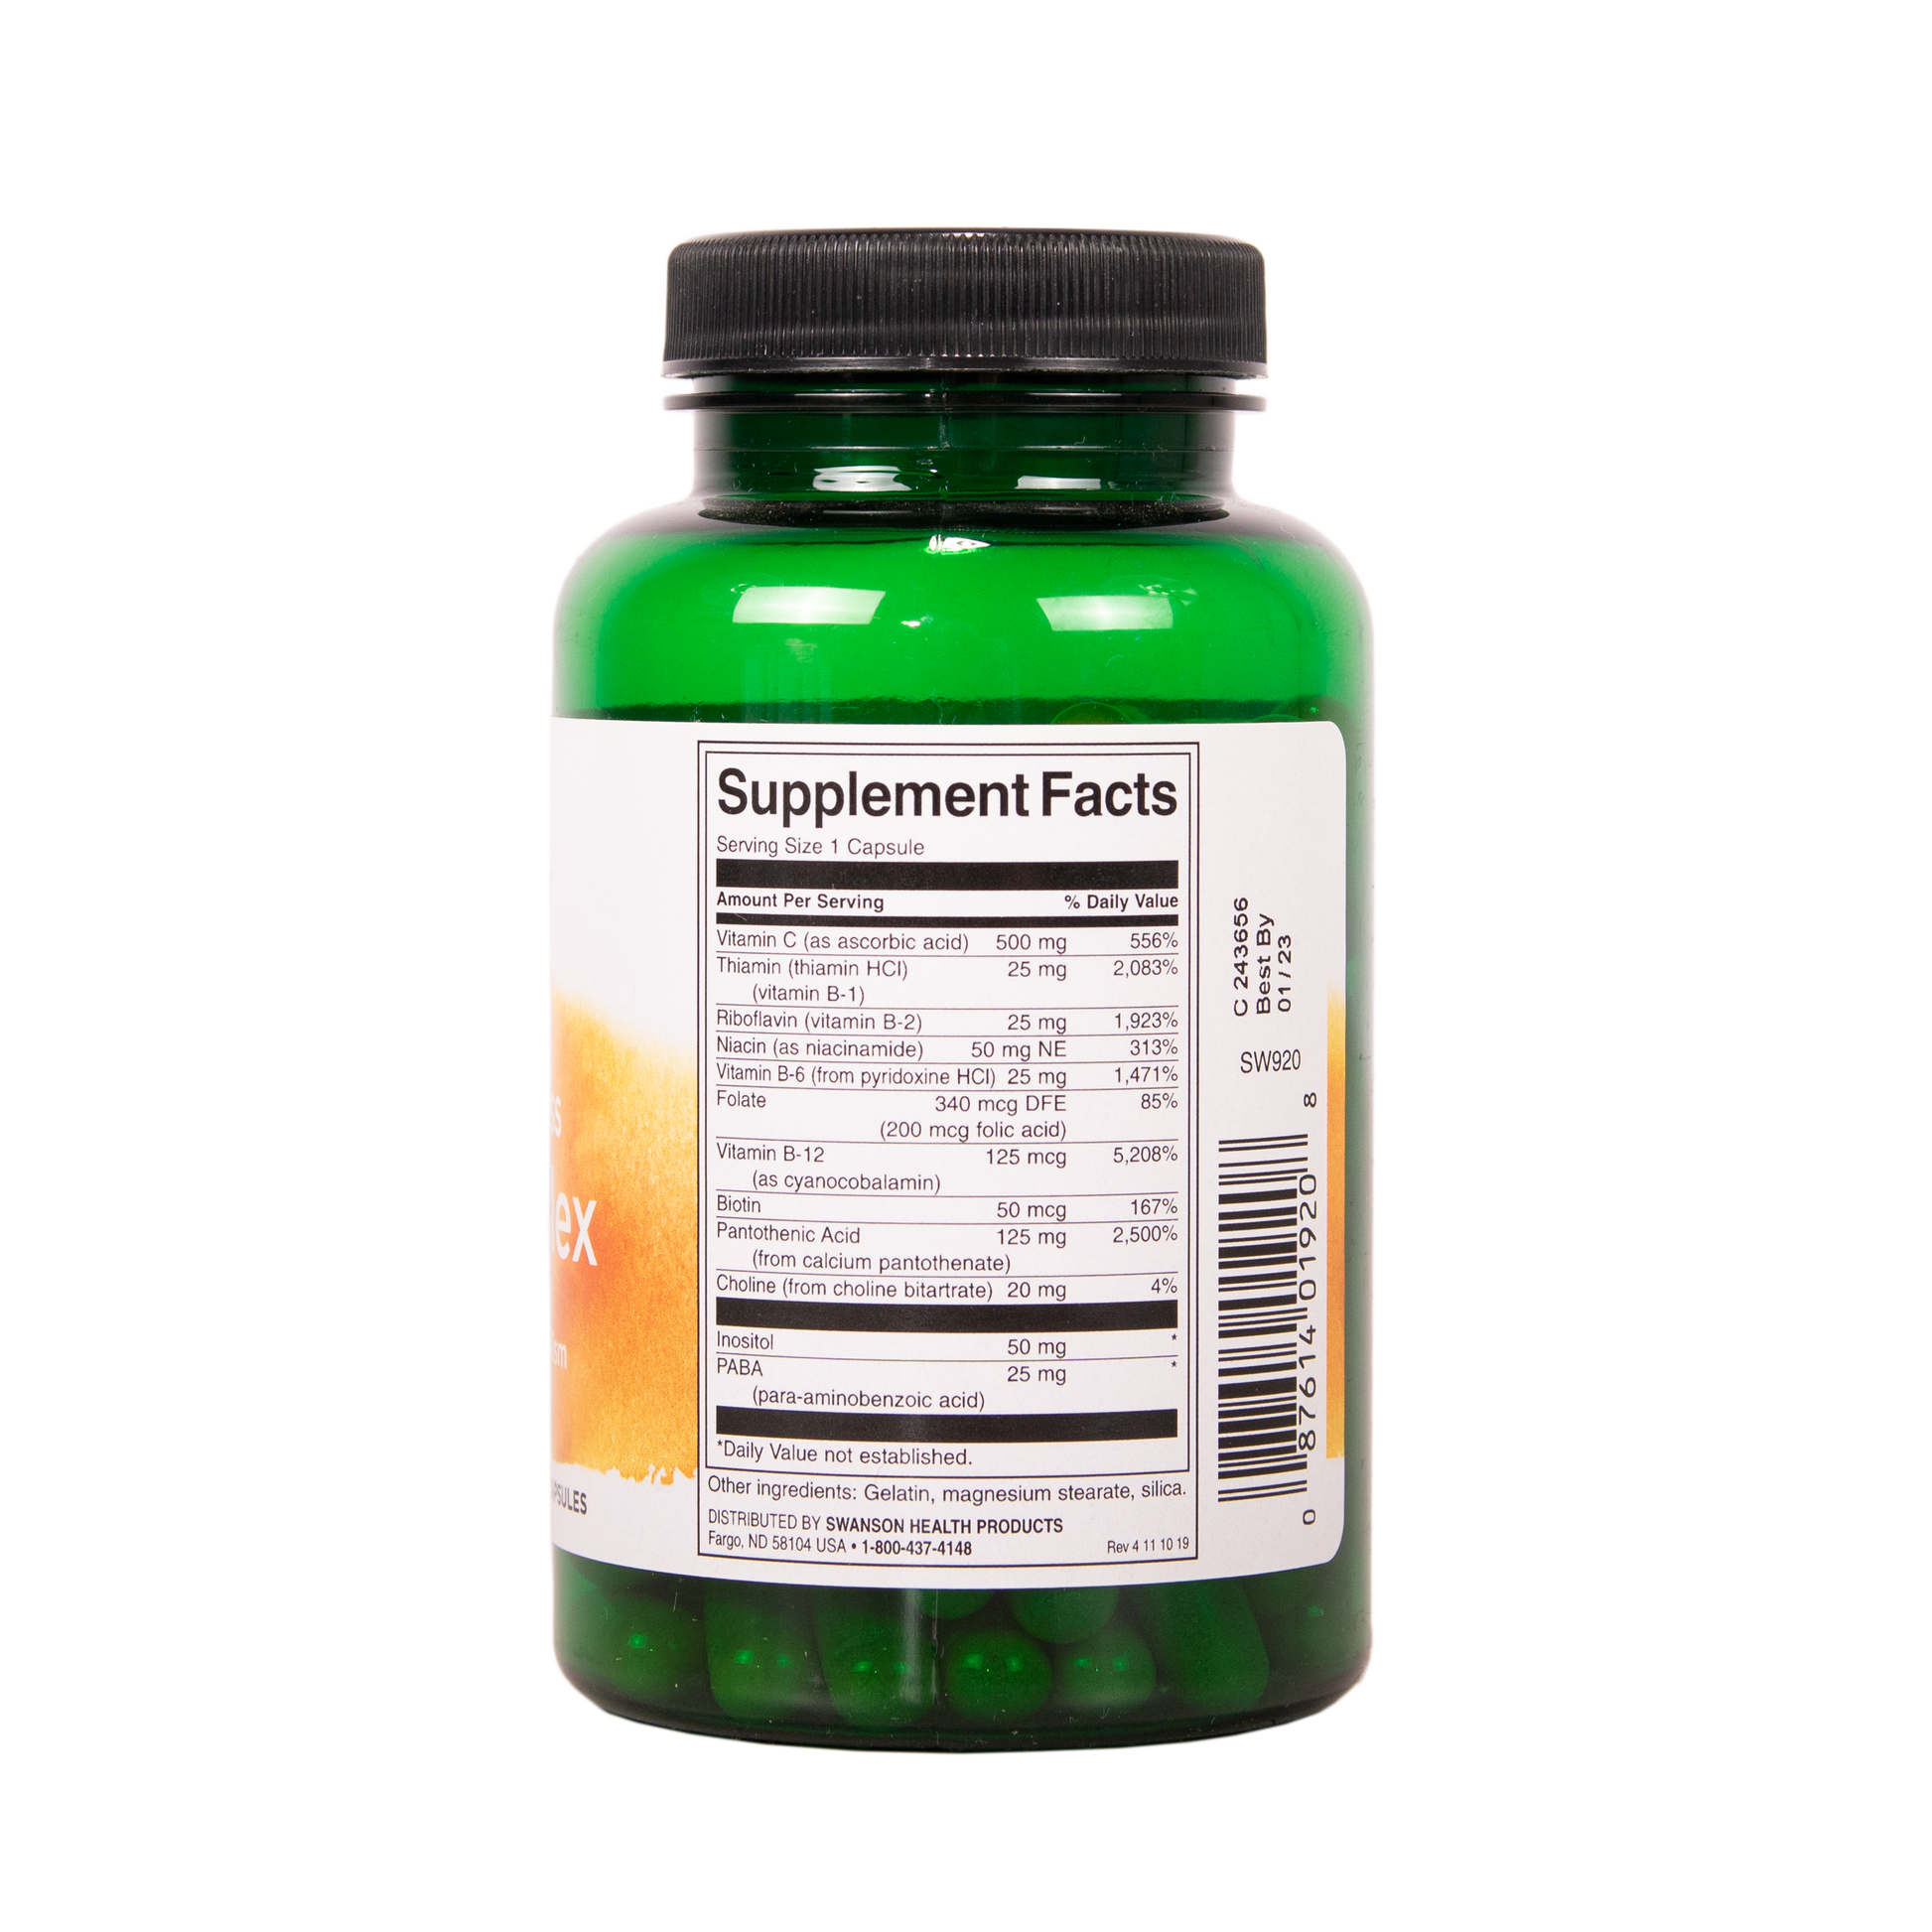 SWANSON Super Stress B-Complex C-vitamiinilla 100 kapselia w2w terveys ja hyvinvointi verkkokauppa